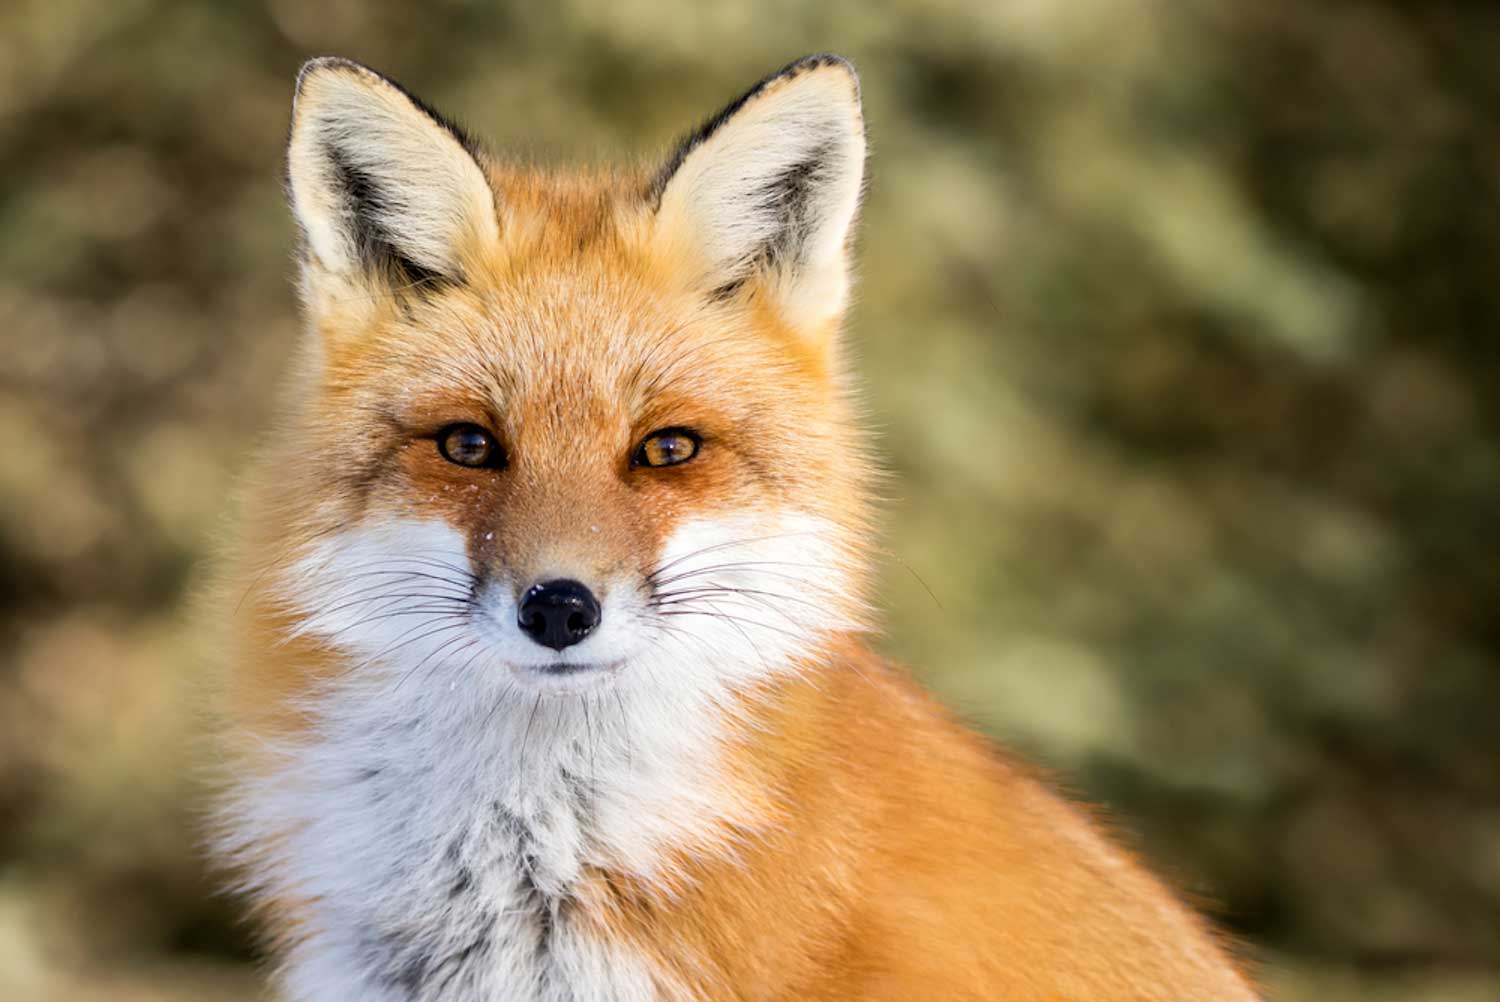 A red fox.